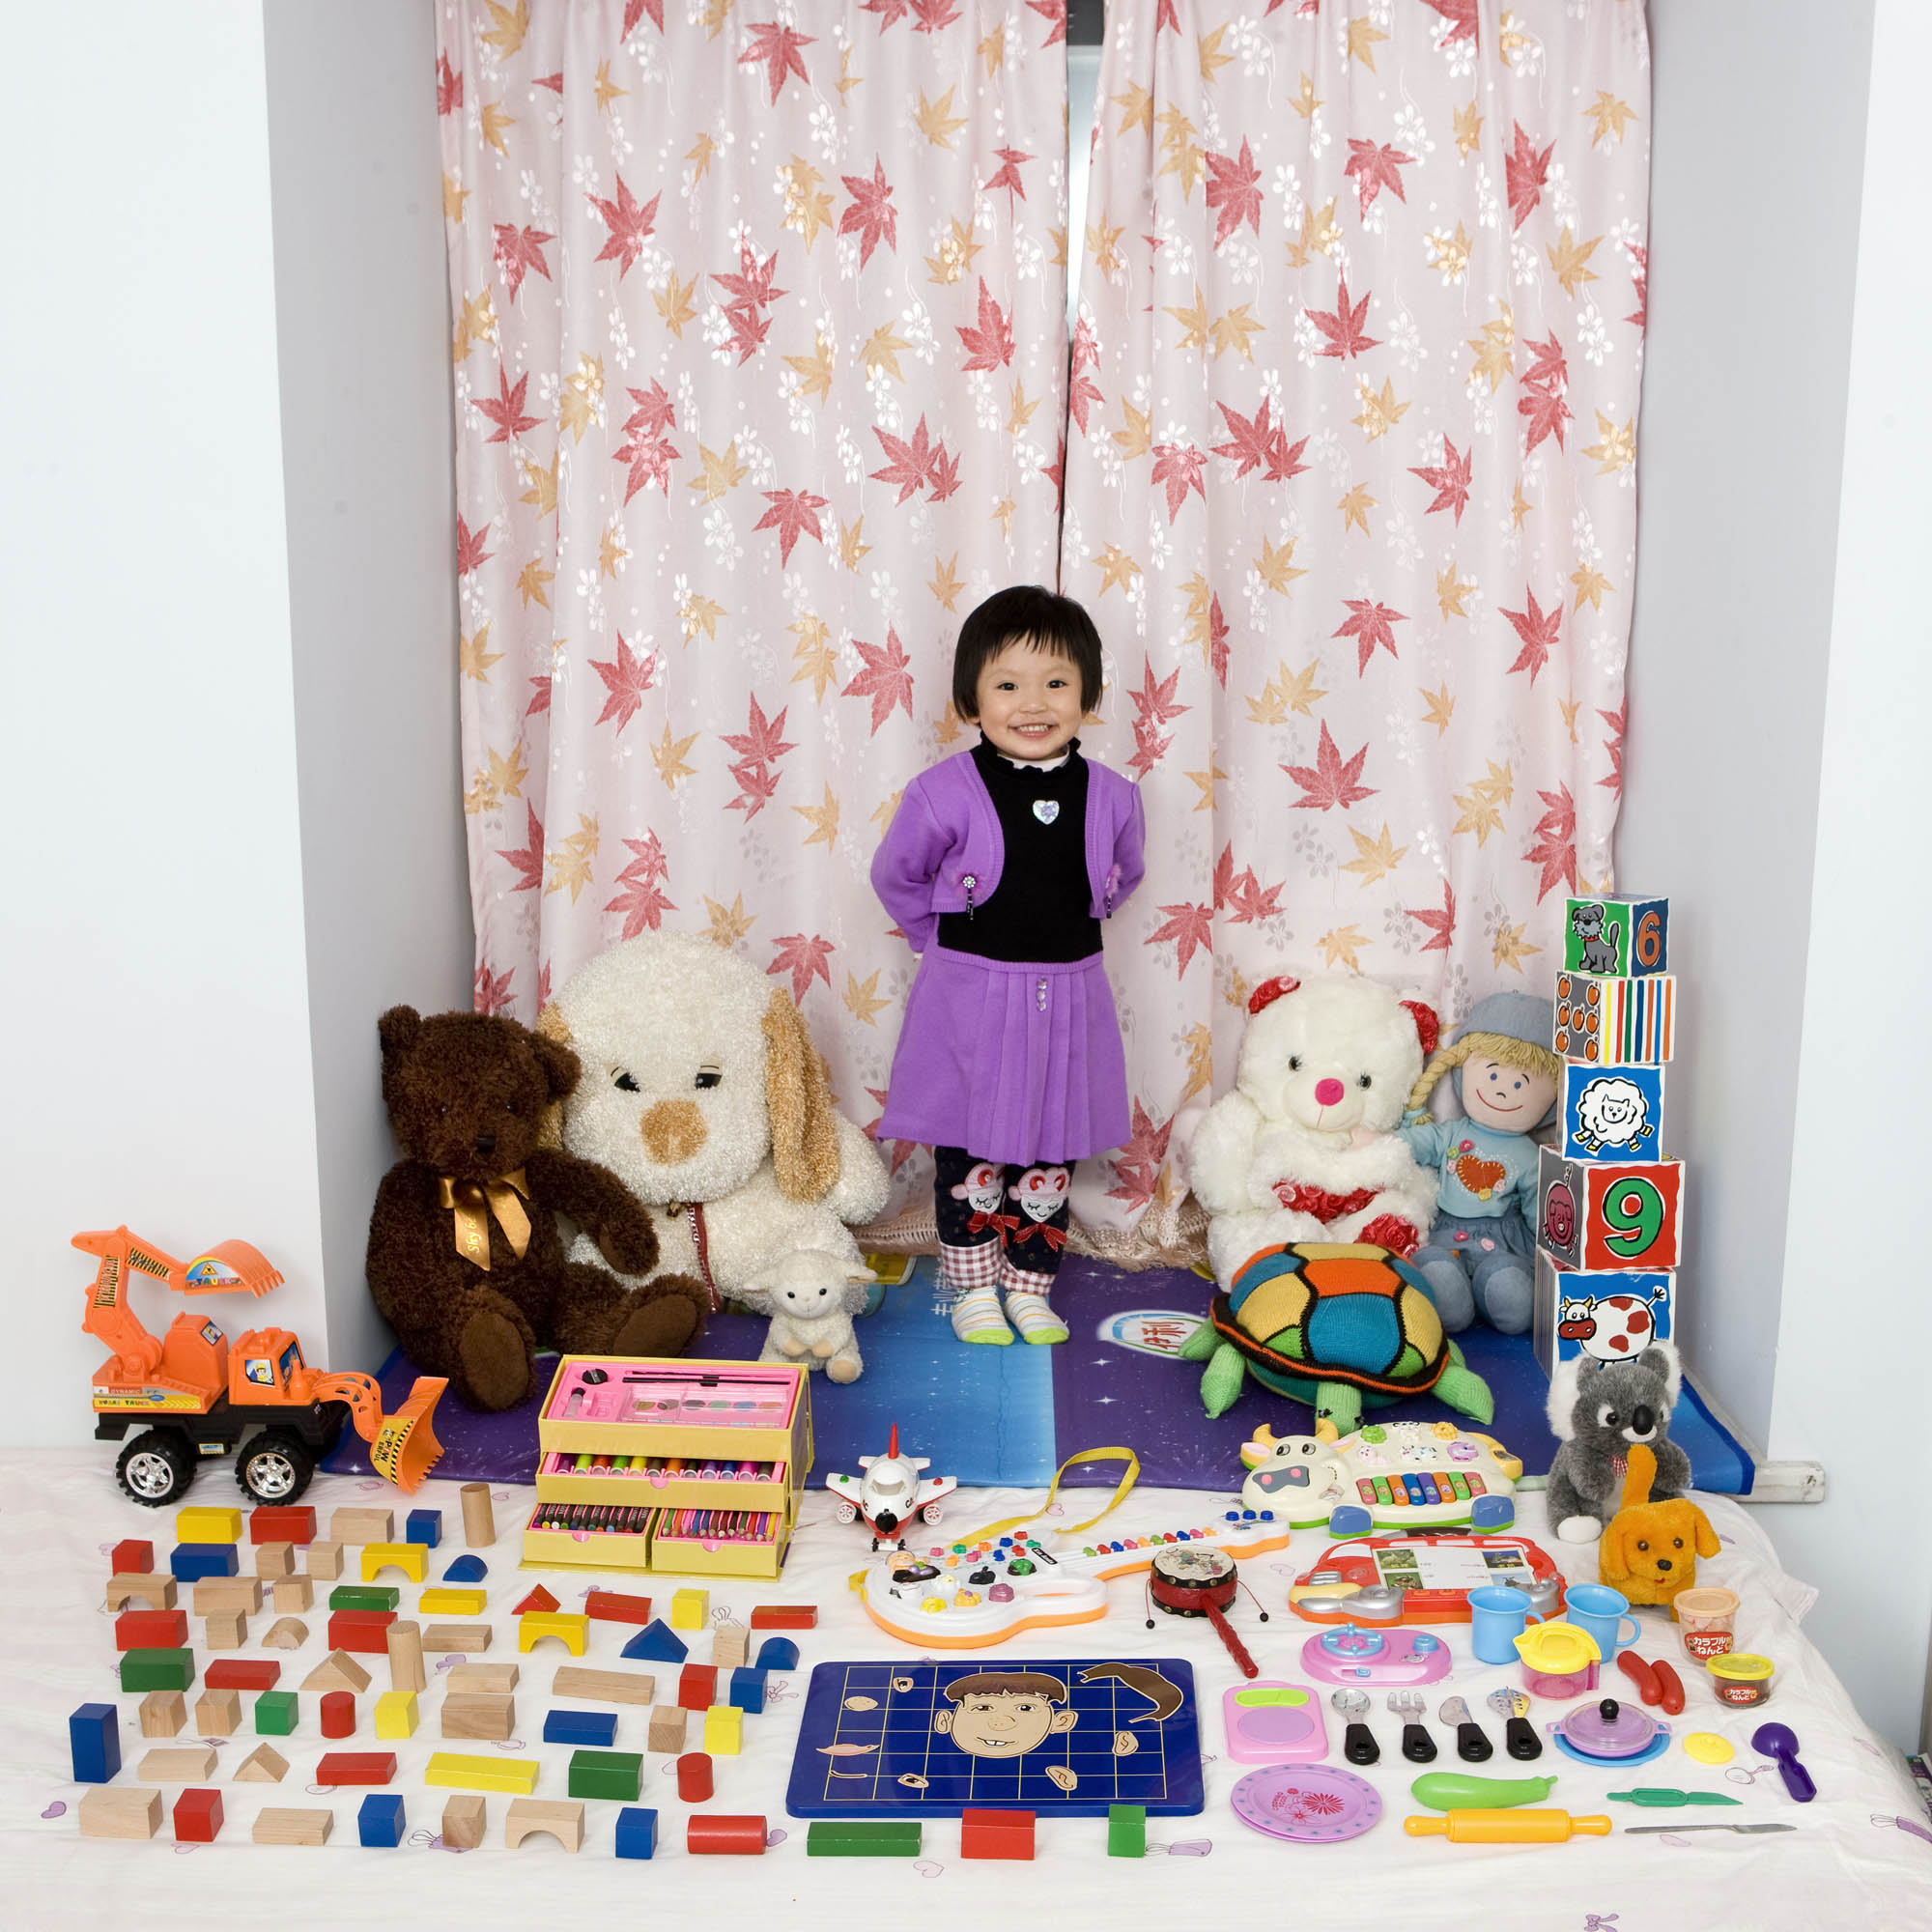 Da TOY stories di Gabriele Galimberti©. Zi Yi, 3 anni - Chongquing, China Cun Zi Yi ha compiuto 3 anni da un mese e per il compleanno ha ricevuto molti regali. Goica con tutto, non ha un giocattolo preferito. I suoi genitori dicono che è molto brava a disegnare e che da grande sarà un'artista.